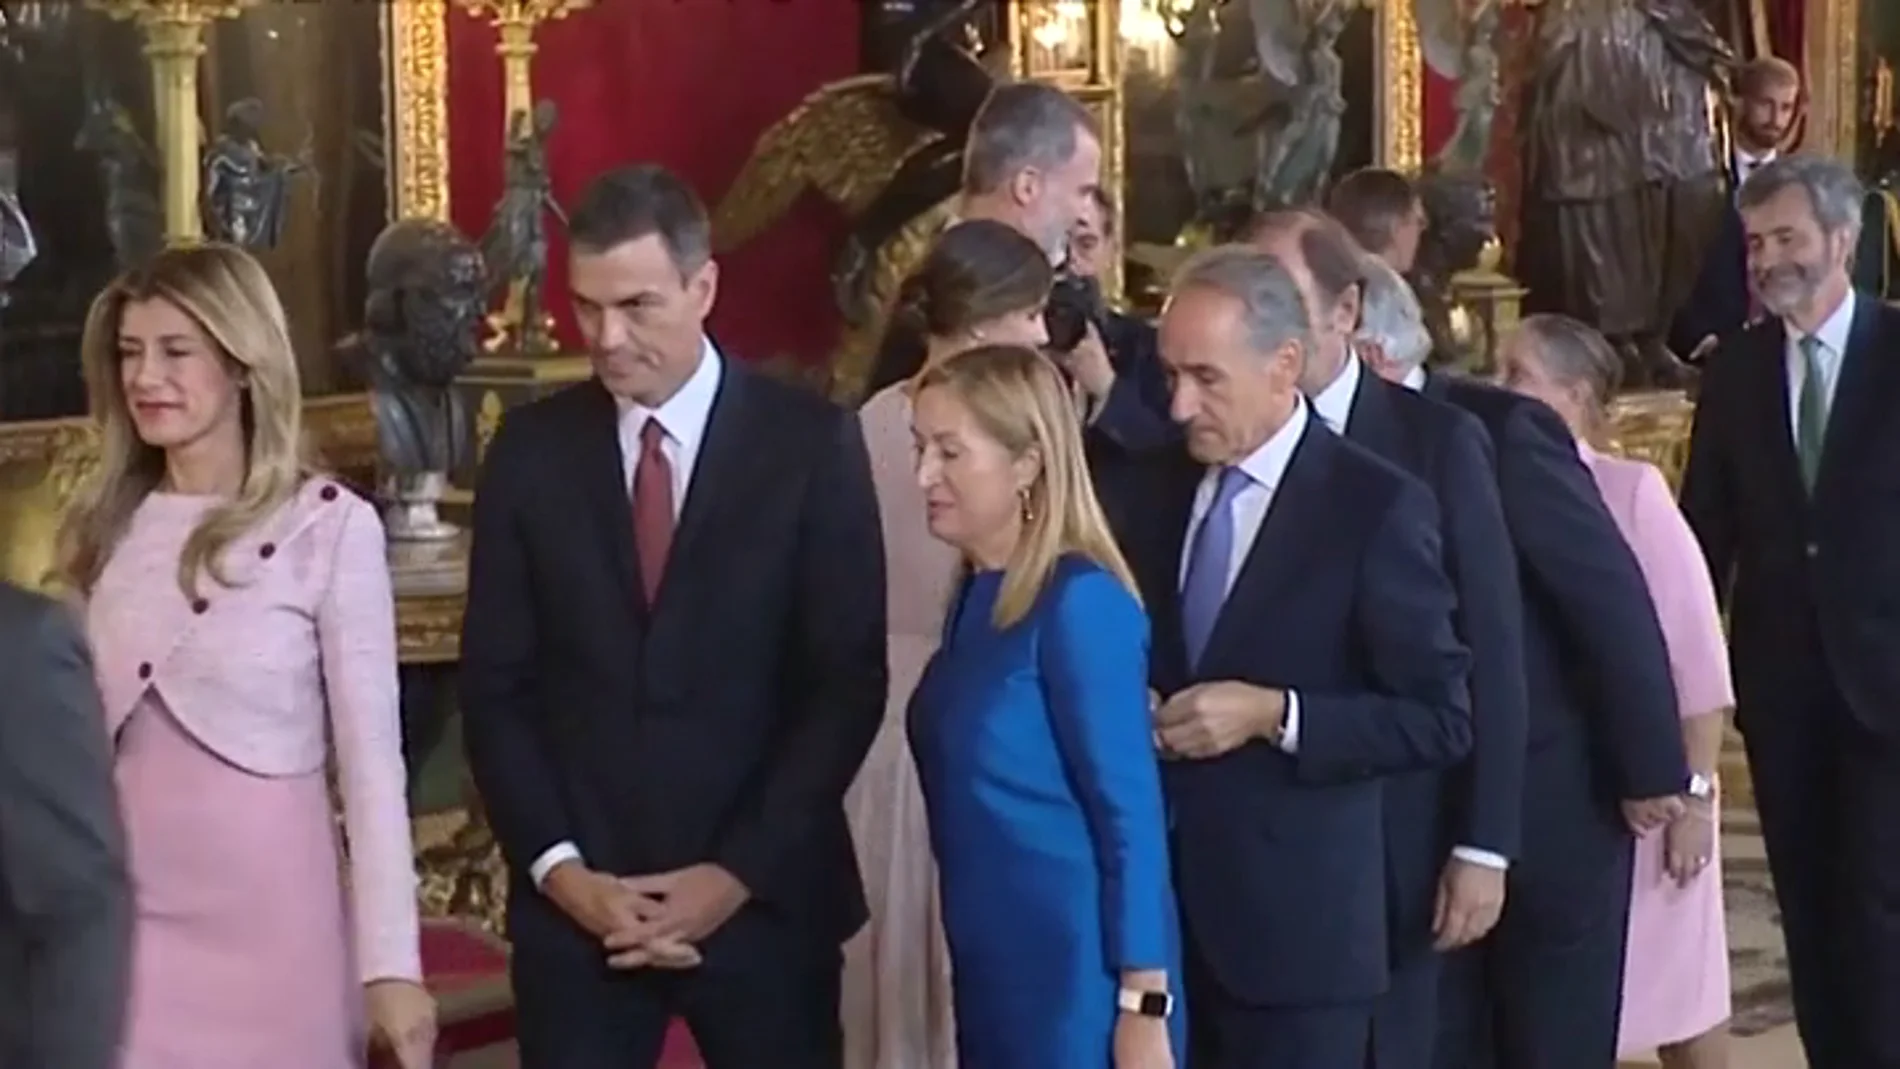 El error de protocolo de Pedro Sánchez y su mujer durante el besamanos con los Reyes en el Palacio Real